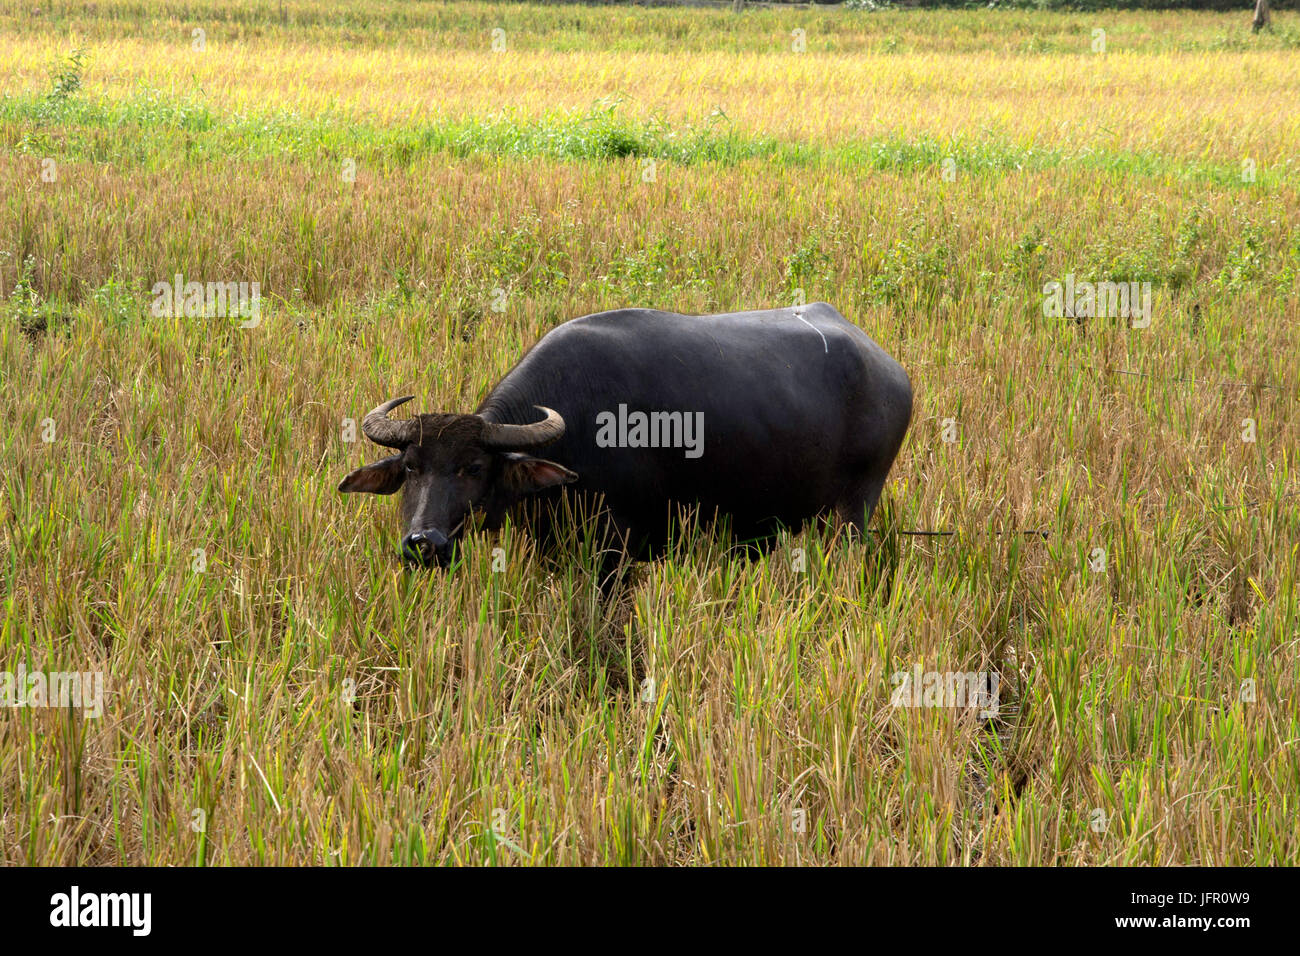 Filipina de búfalo de agua, conocido como un carabao, Bubalus bubalis, en un campo de arroz, la isla de Bohol, Filipinas Foto de stock